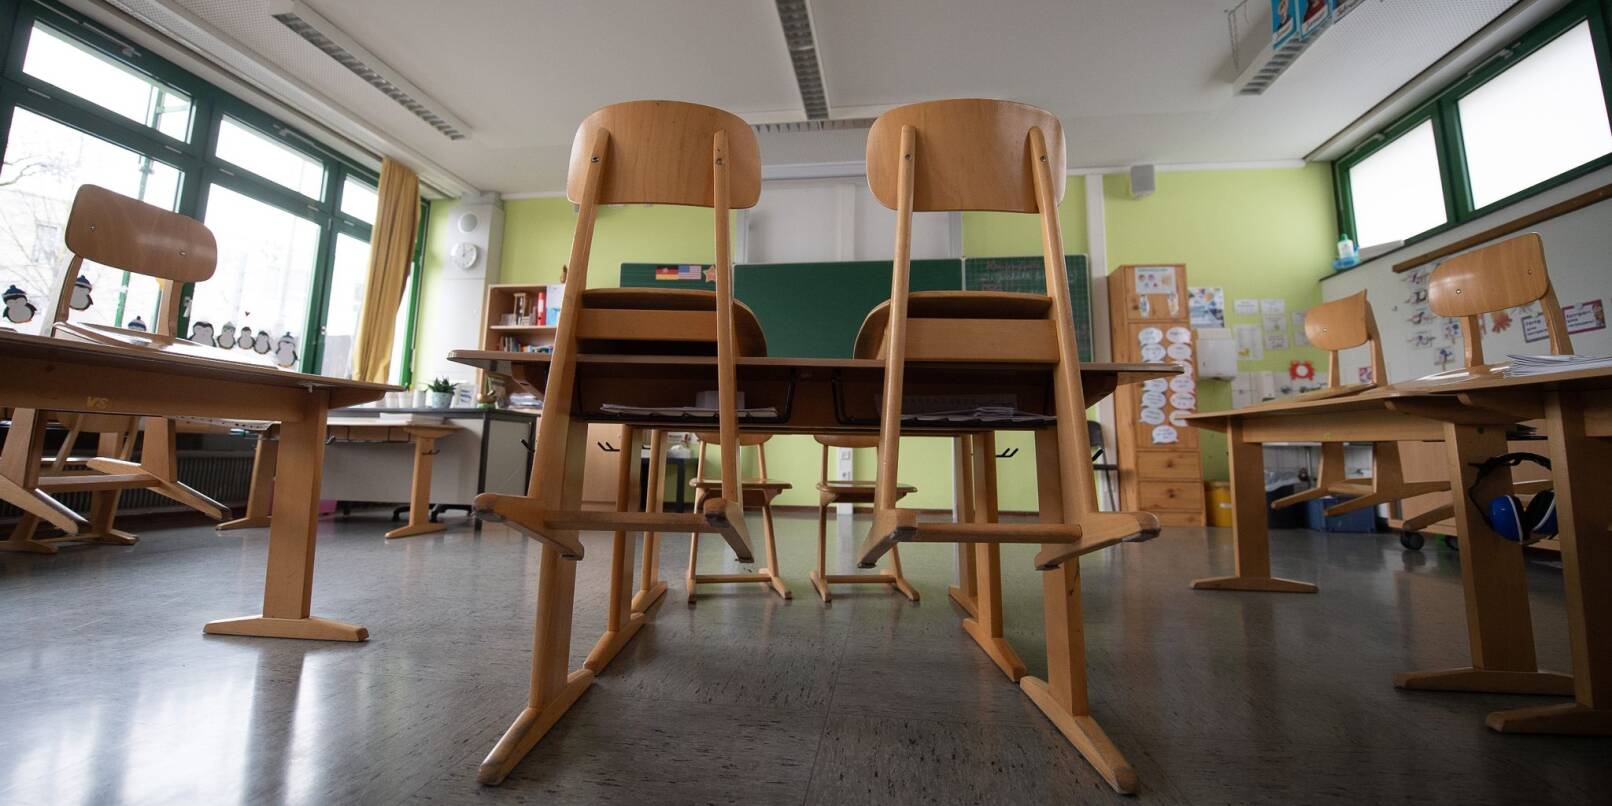 Am Montag ist Großstreiktag in Deutschland - deshalb gibt es für viele Schülerinnen und Schüler Sonderregelungen.